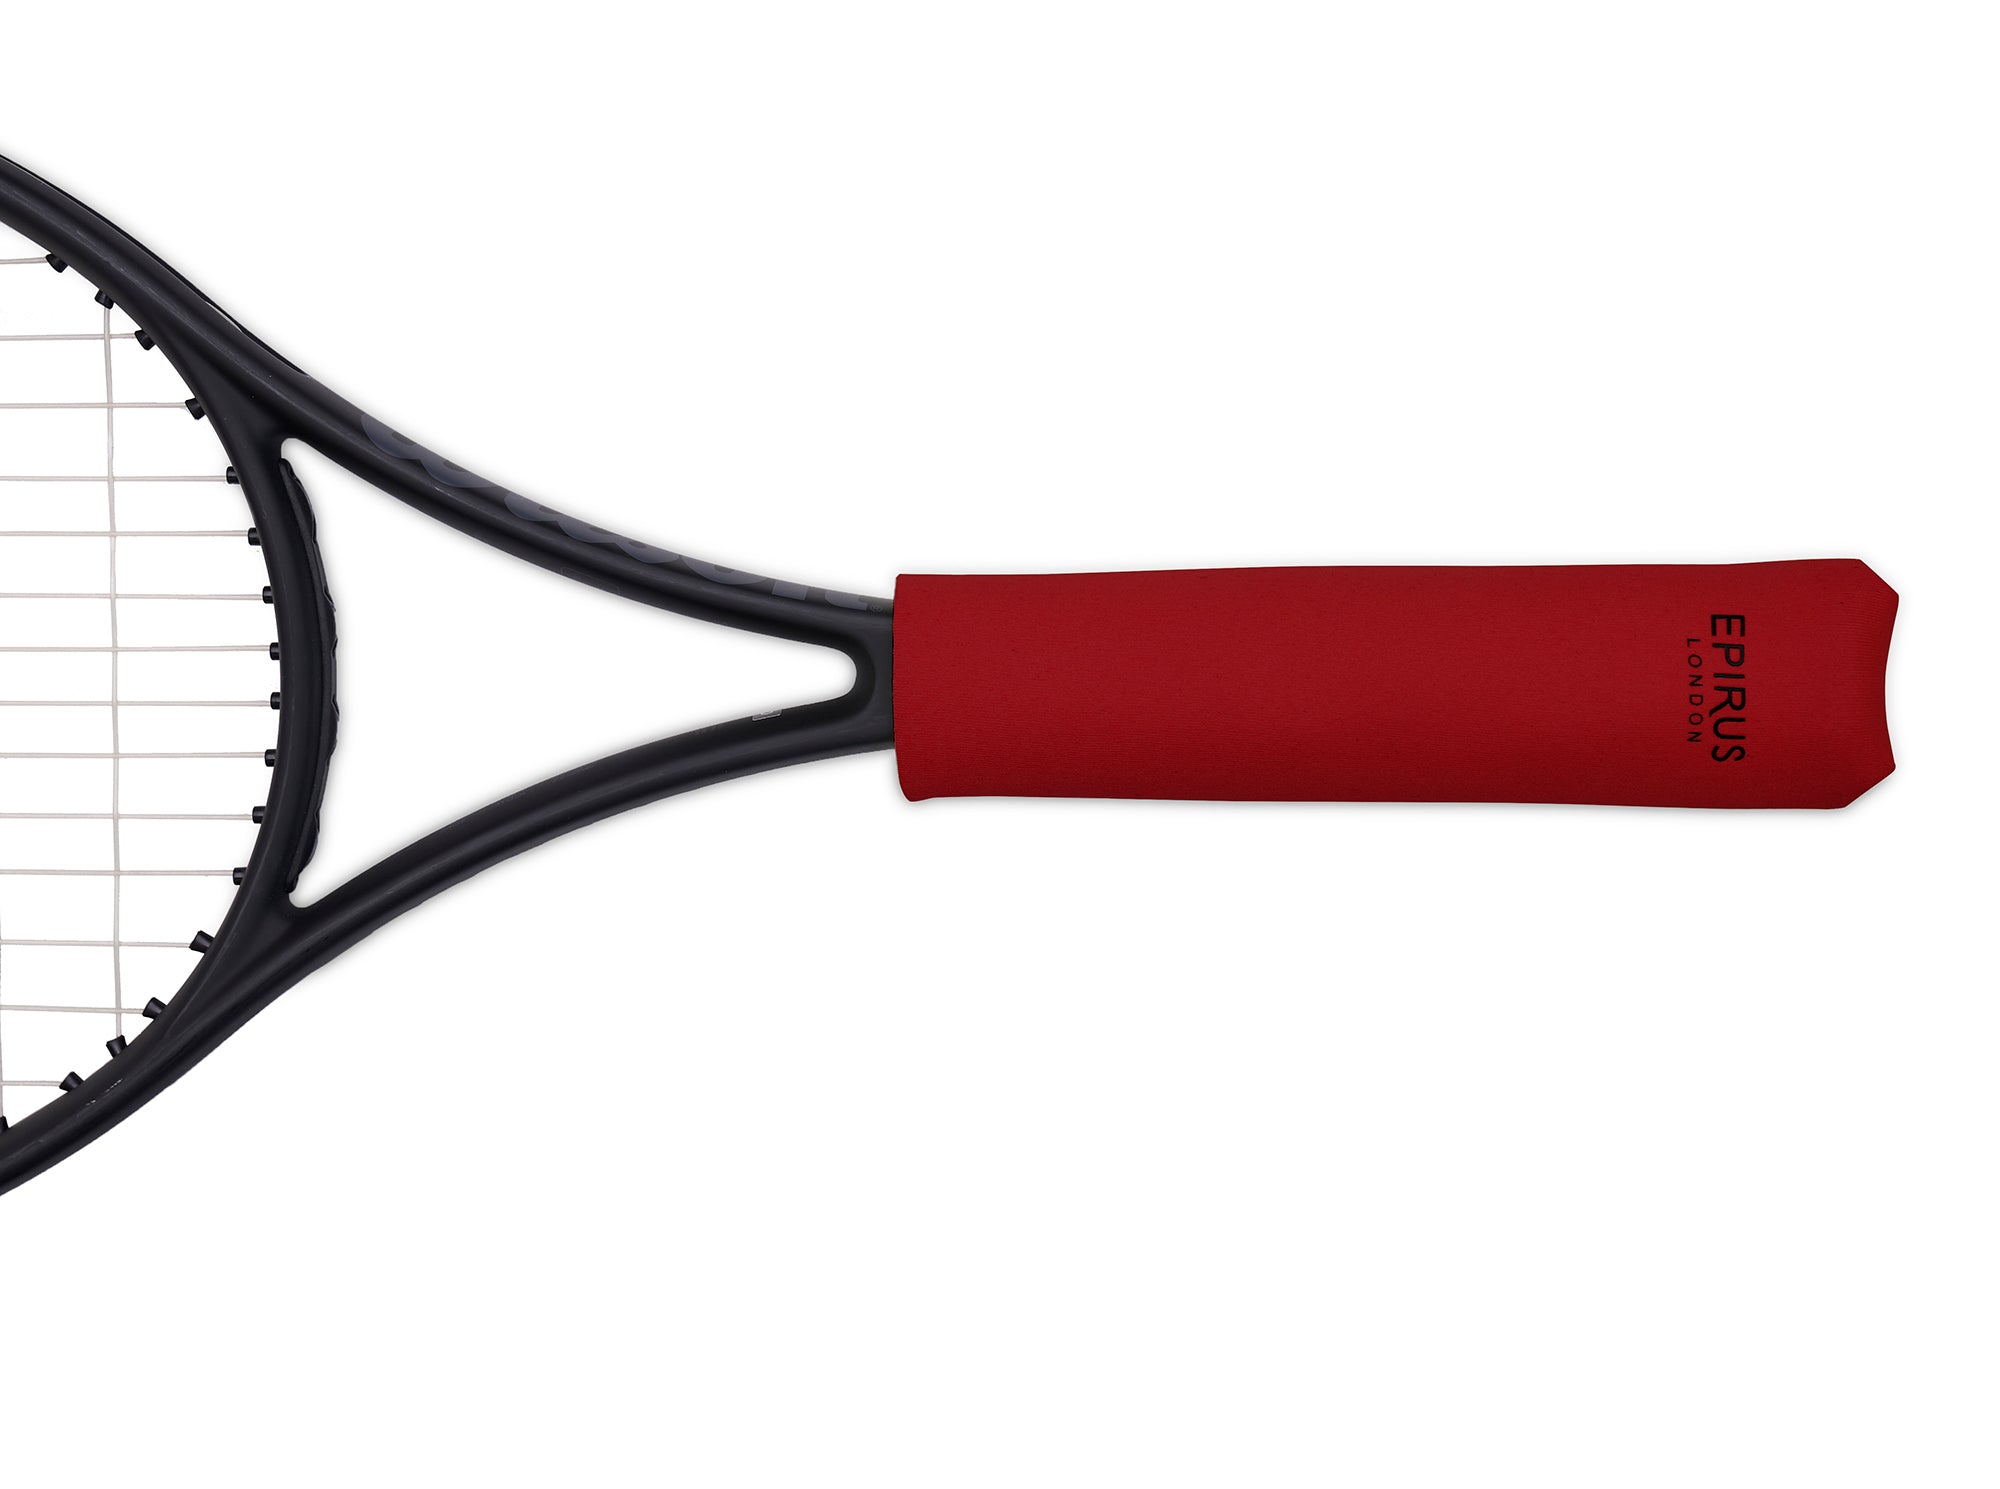 Cubre Grip Overgrip Madma Liso Tenis Paddle Squash Raqueta